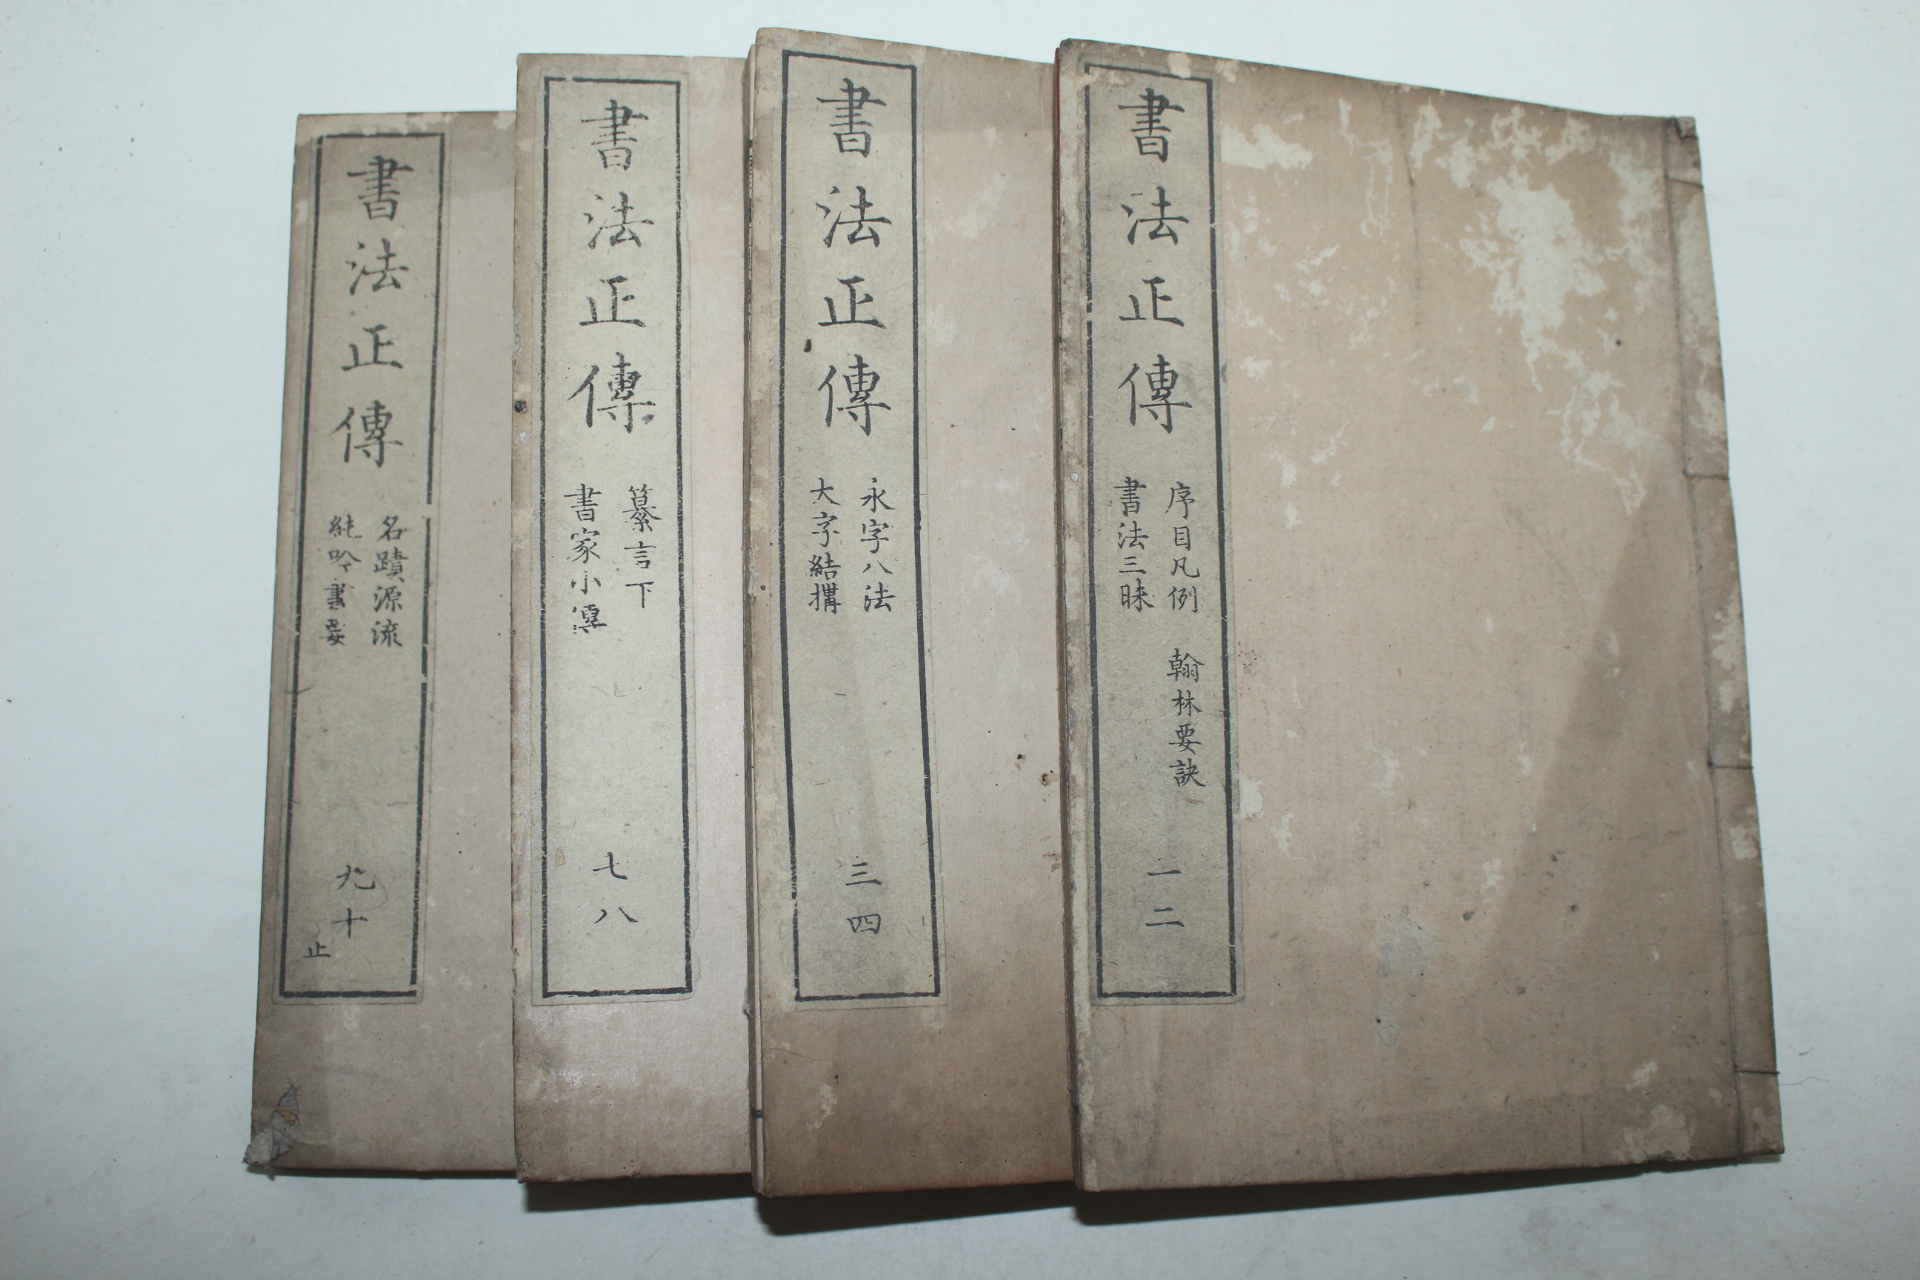 에도시기 목판본 서법정전(書法正傳) 4책